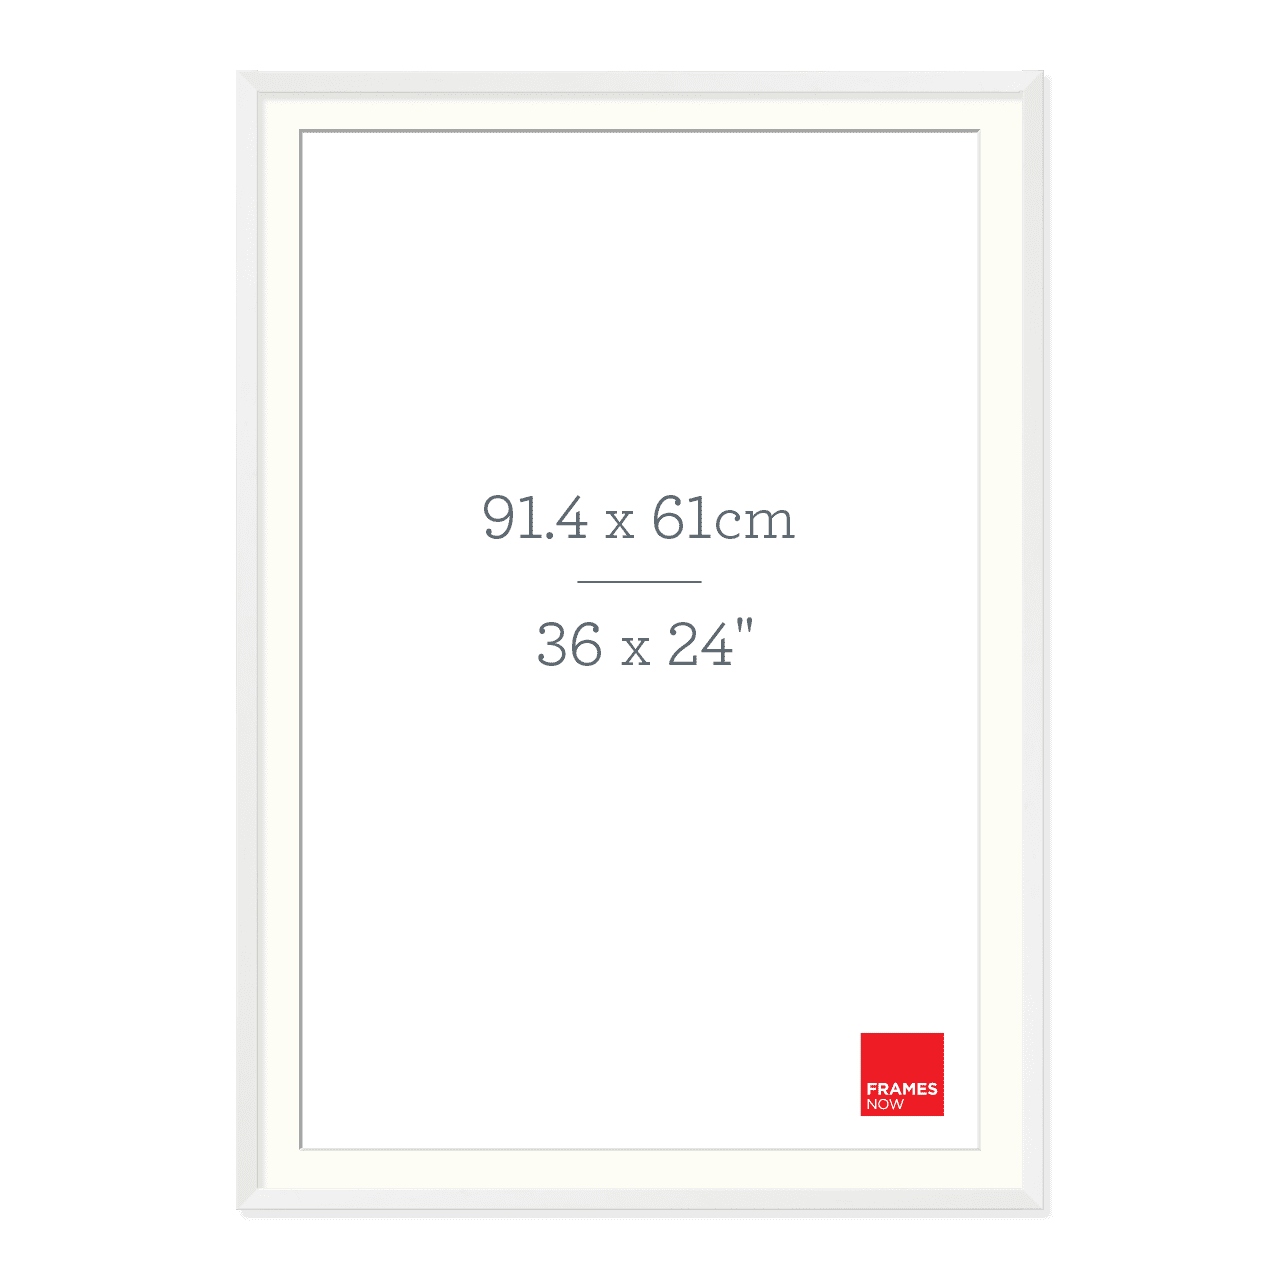 Premium Matte White Box Picture Frame with Matboard for 91.4 x 61cm Artwork